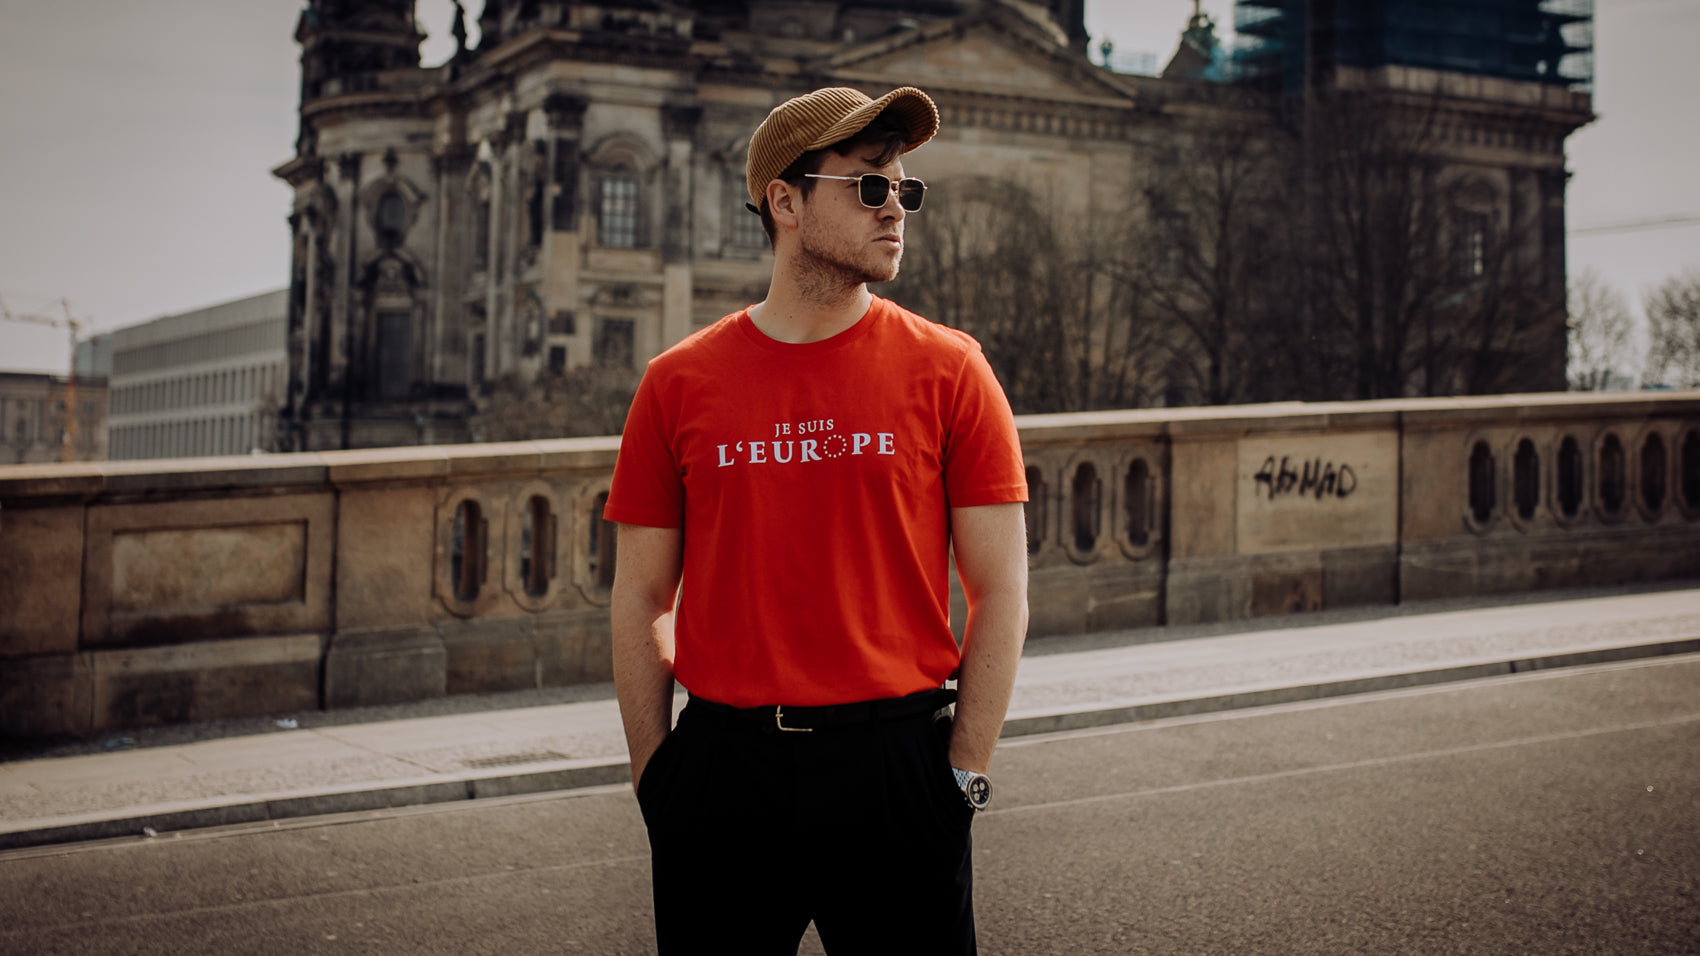 Junger Mann mit rotem t-shirt mit je suis l'europe aufdruck vor der Berliner Kathedrale